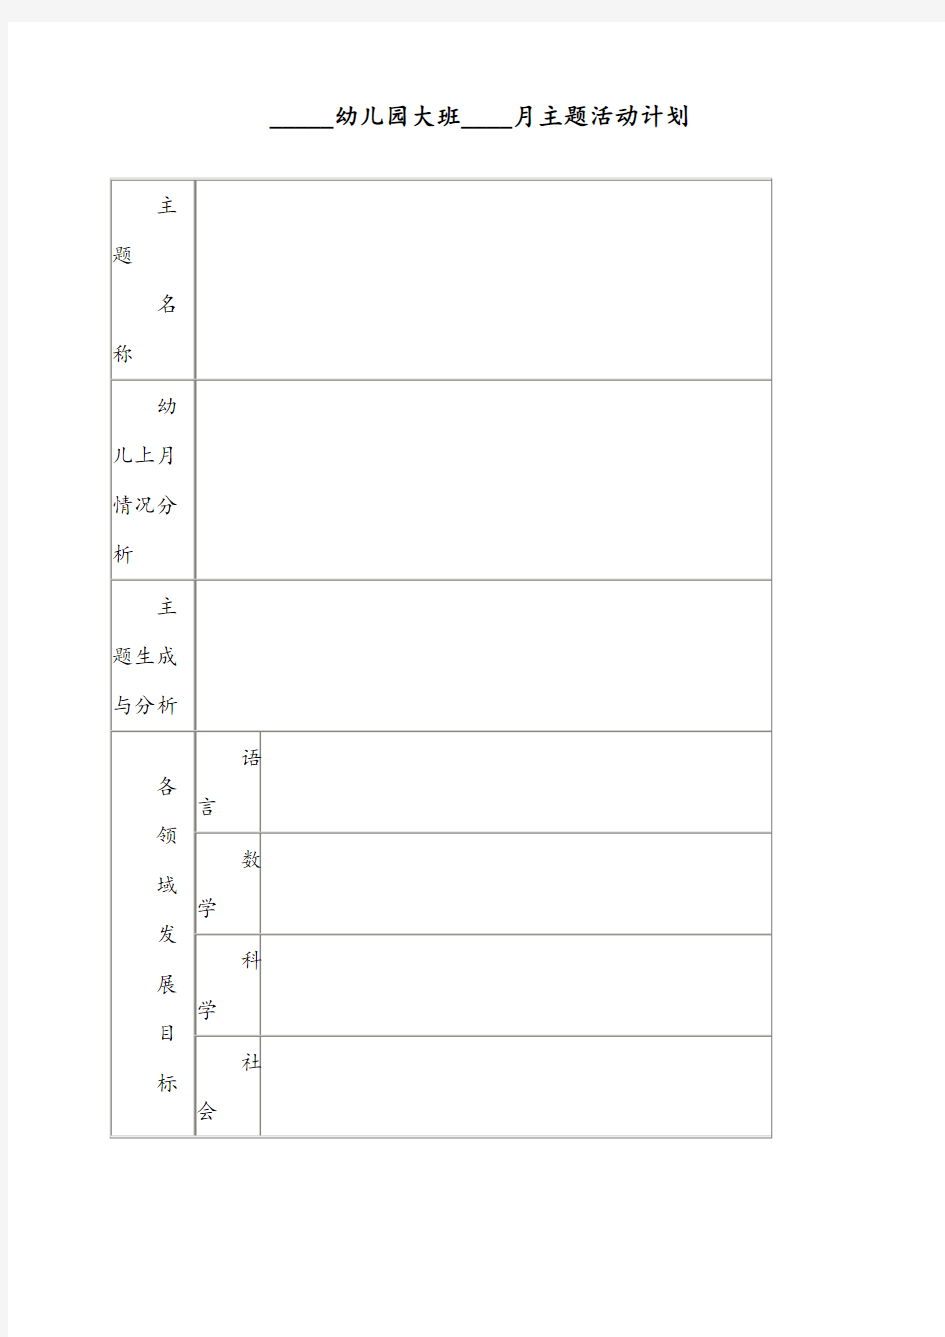 幼儿园大班月主题活动计划表(模板)